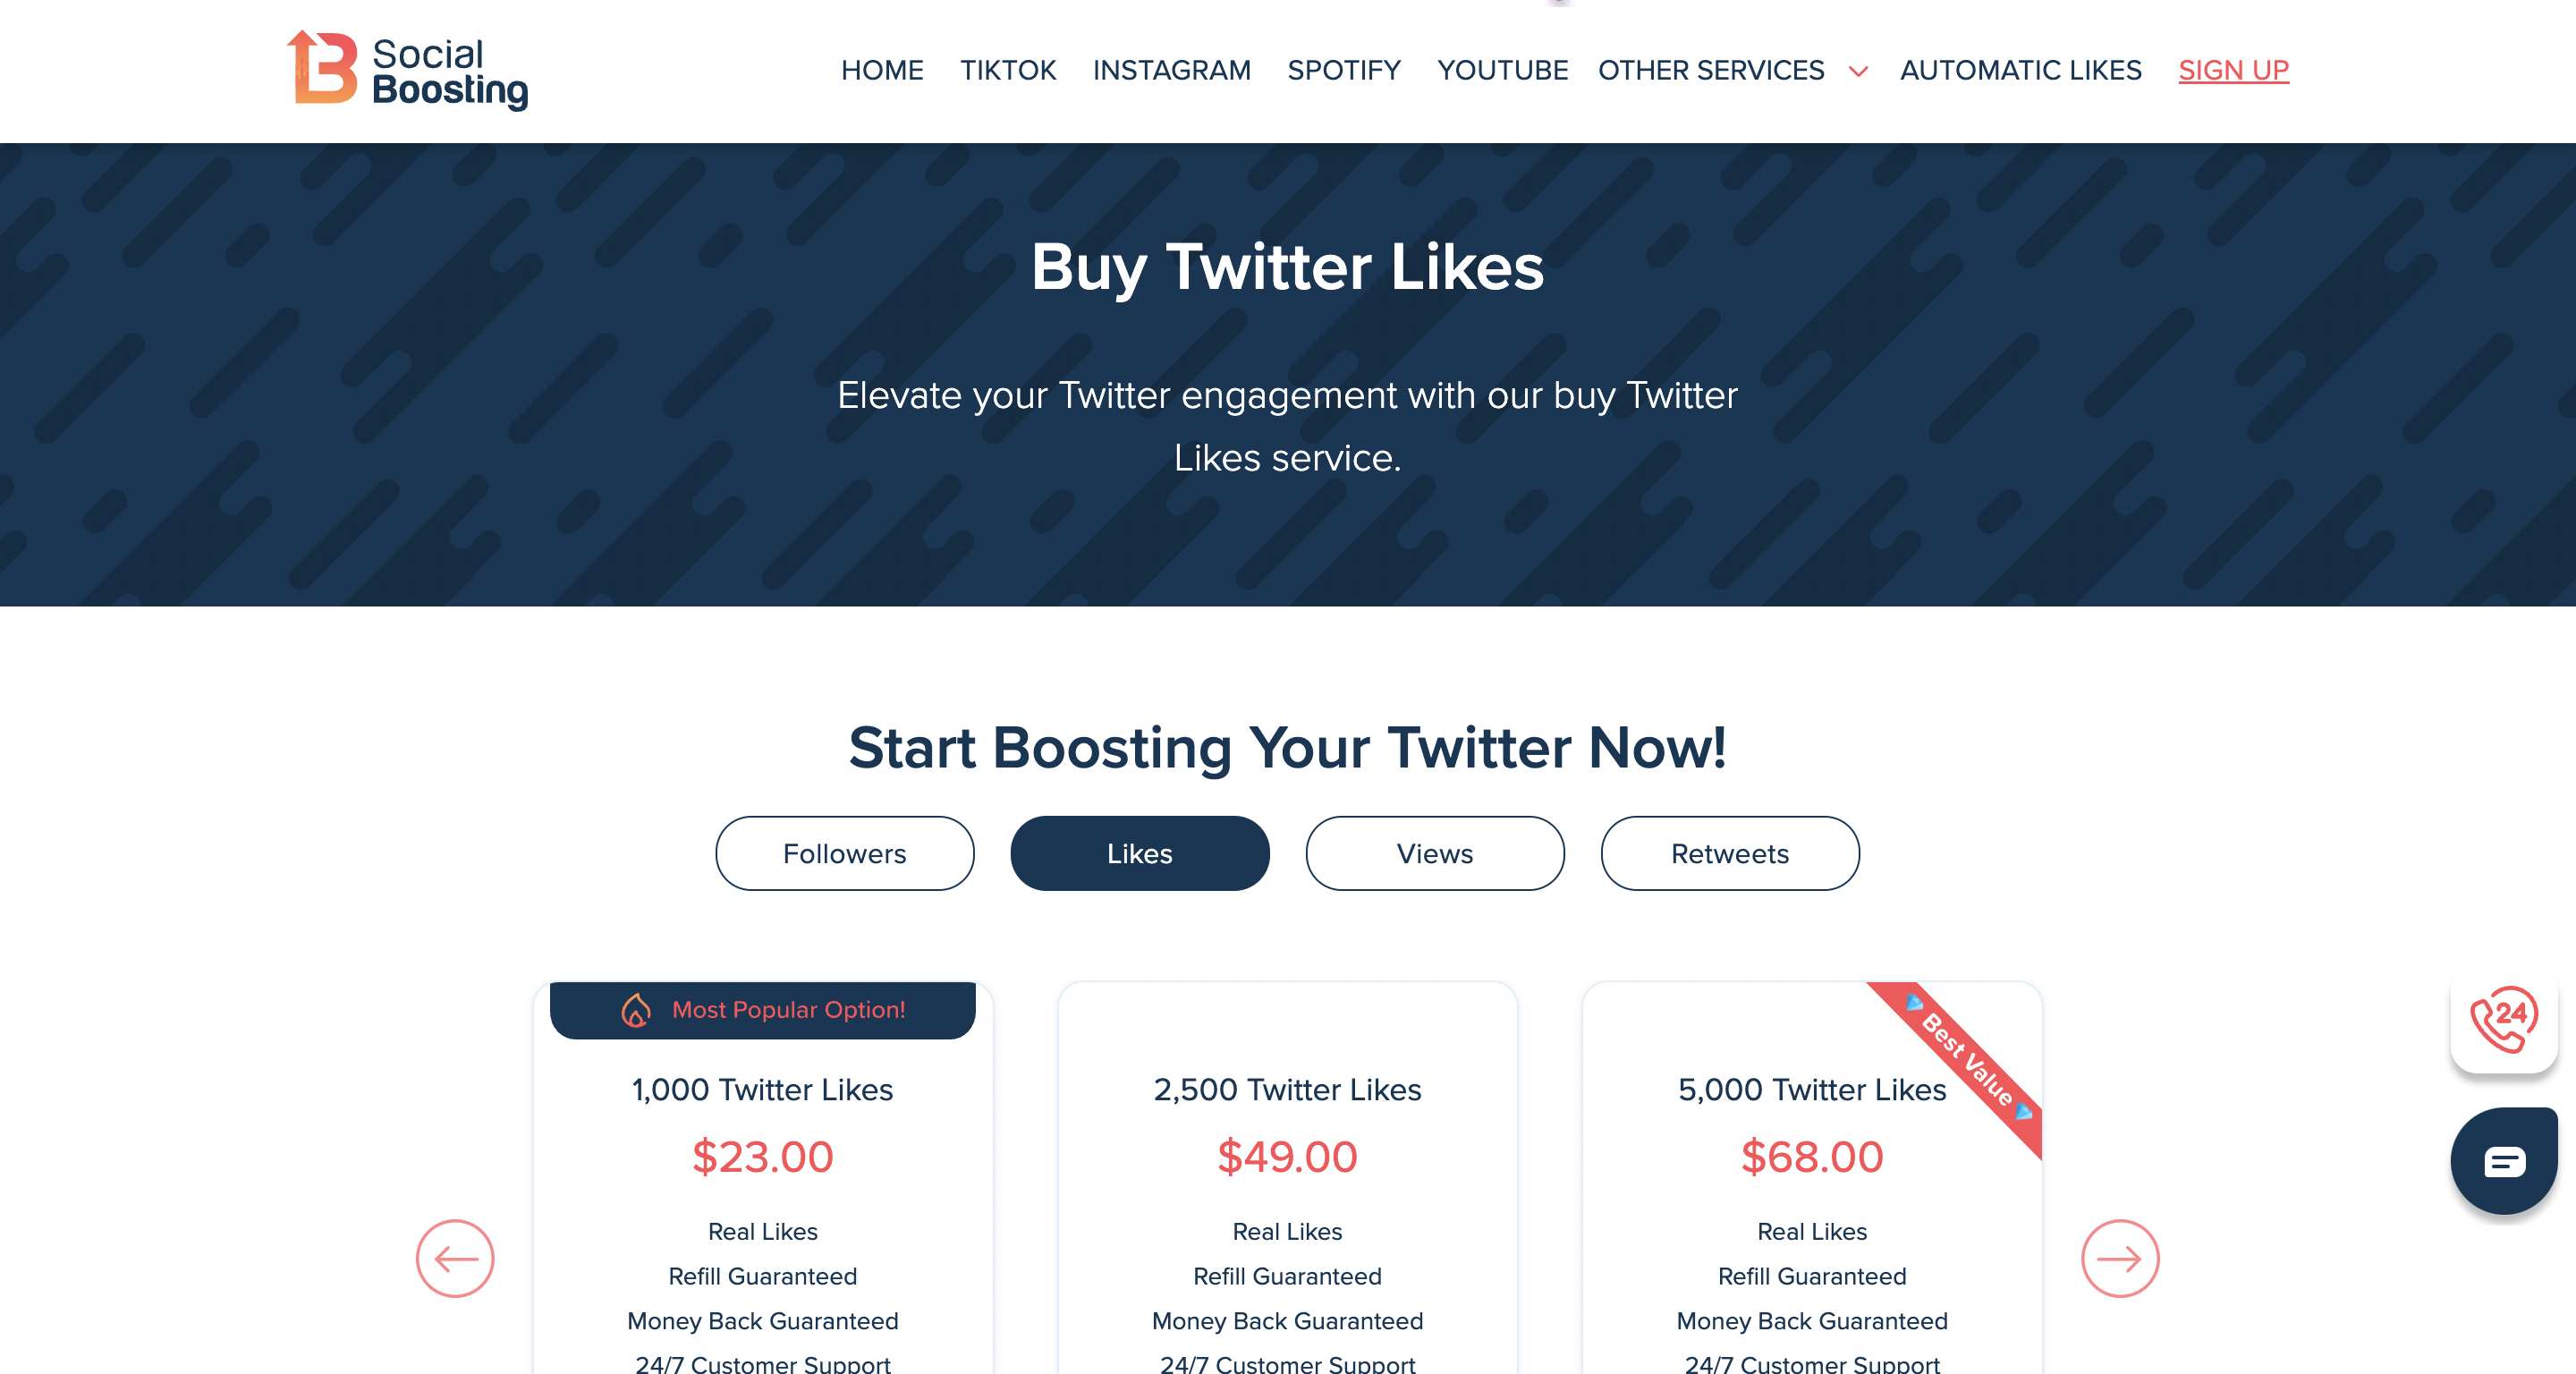 Buy Twitter likes at SocialBoosting